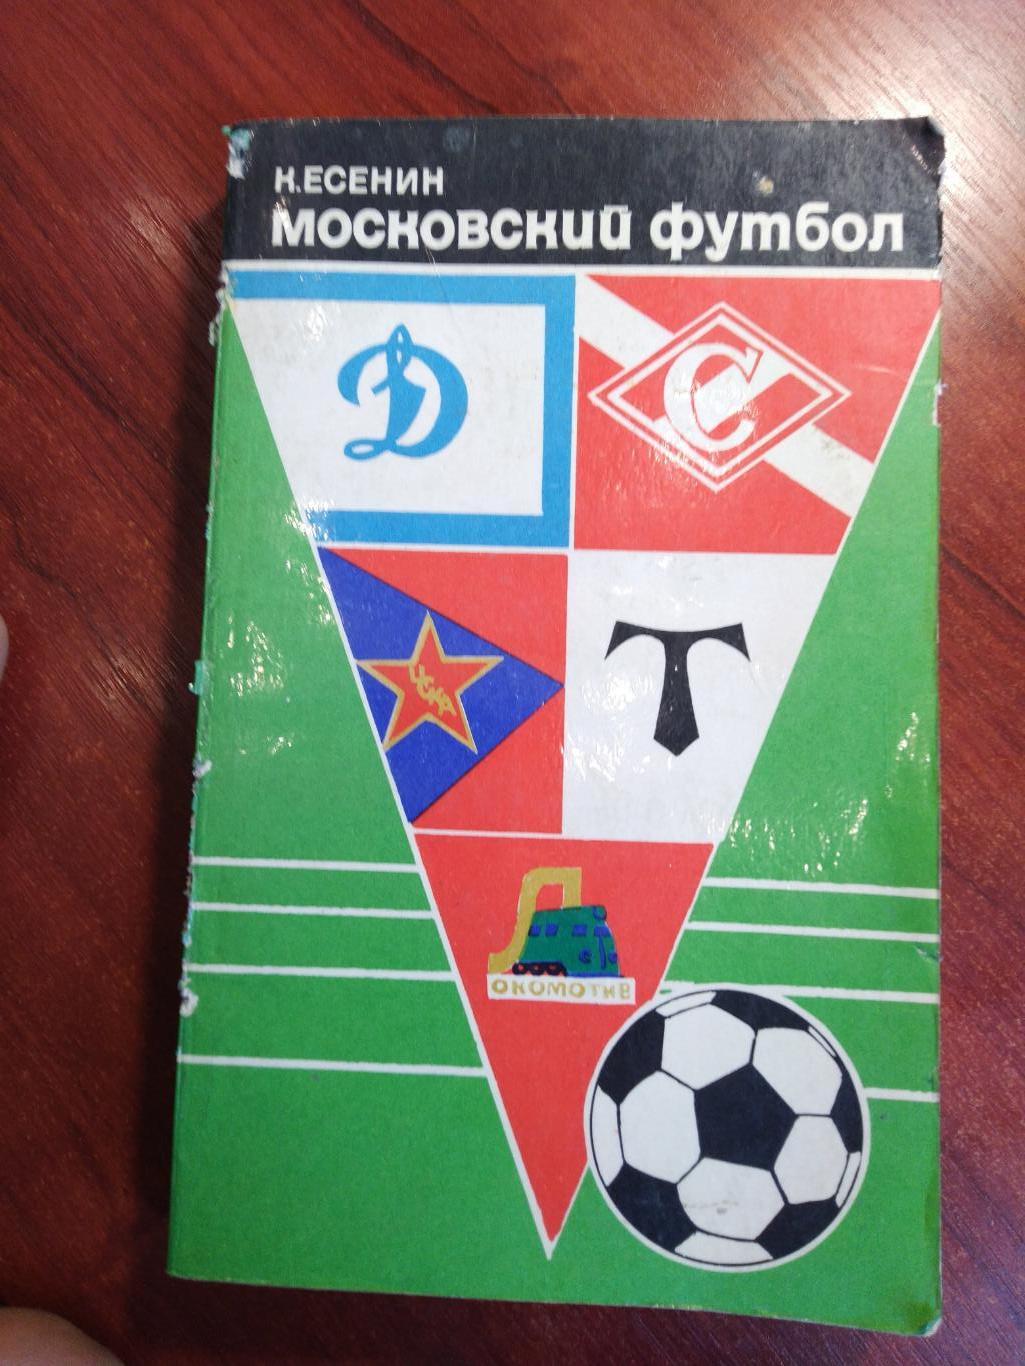 К. Есенин. Московский футбол. Московский рабочий 1974.